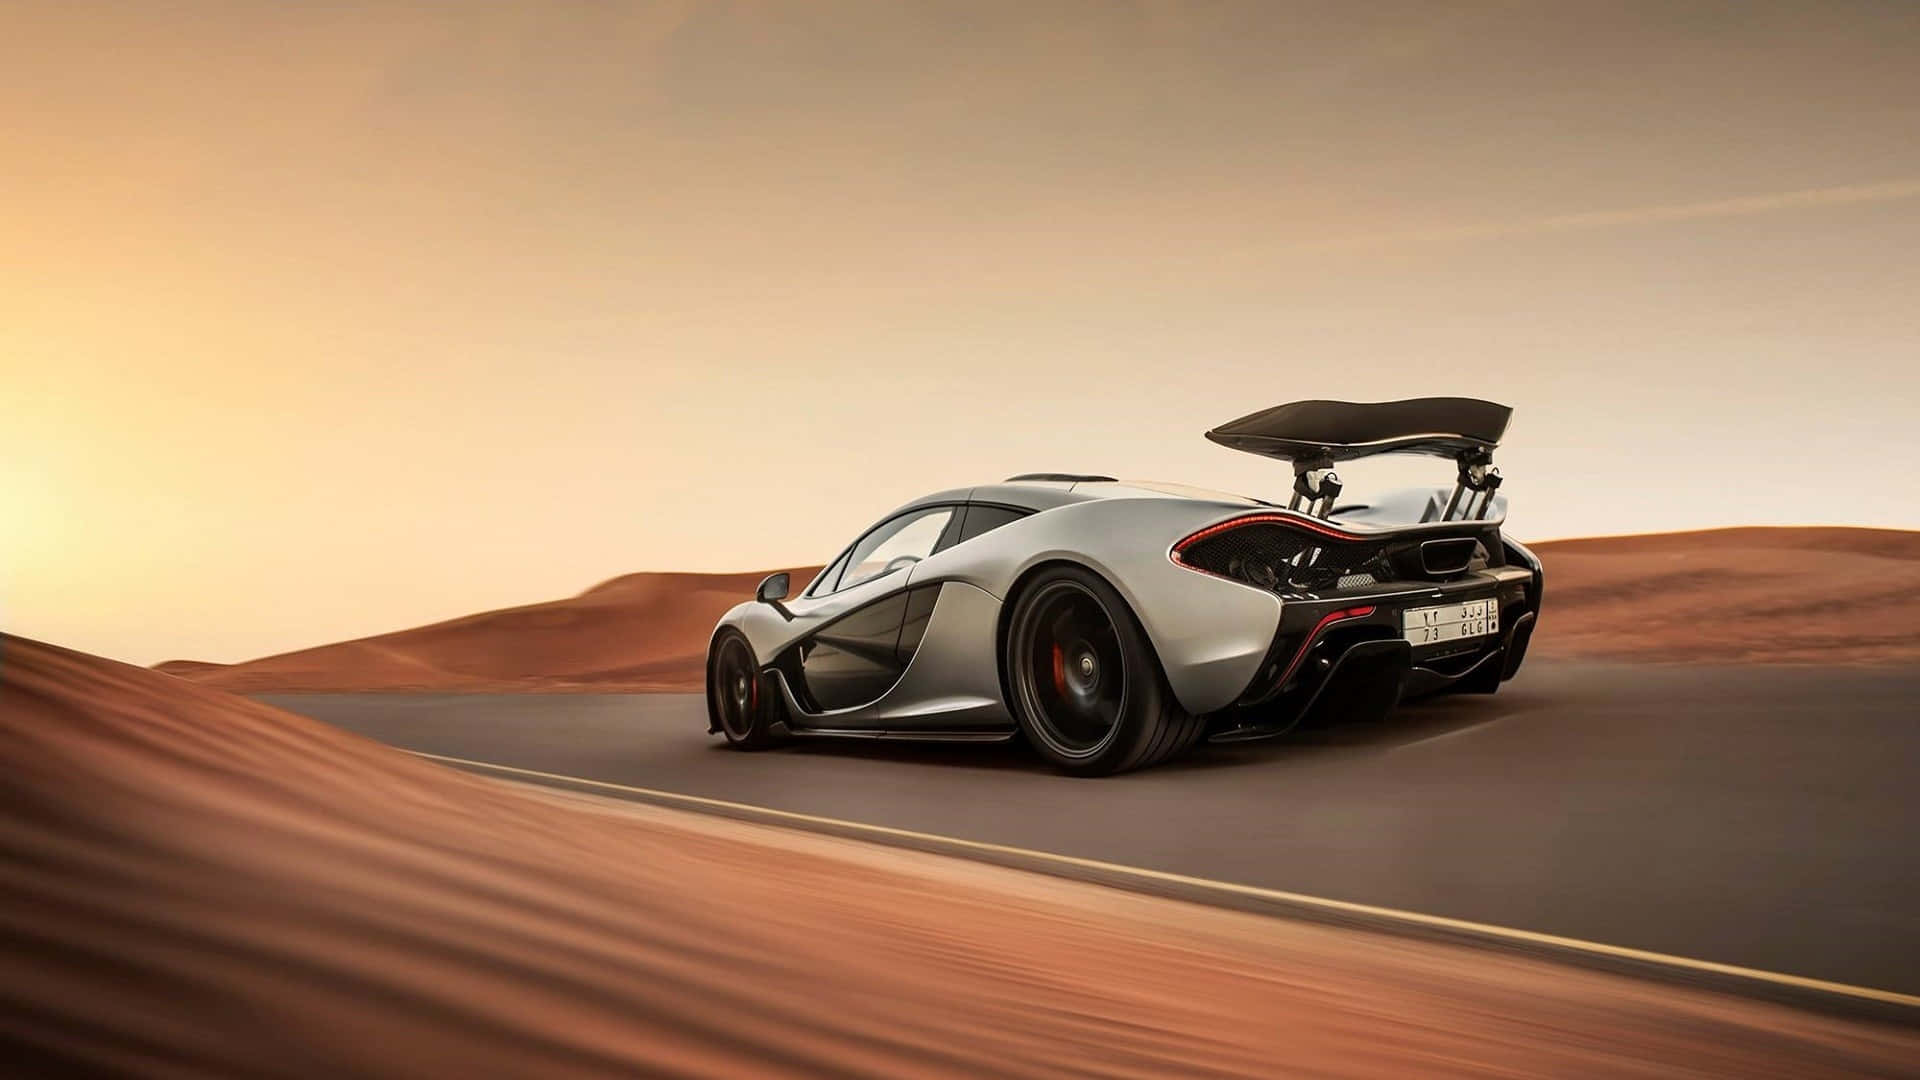 Sleek McLaren Supercar in Vibrant Setting